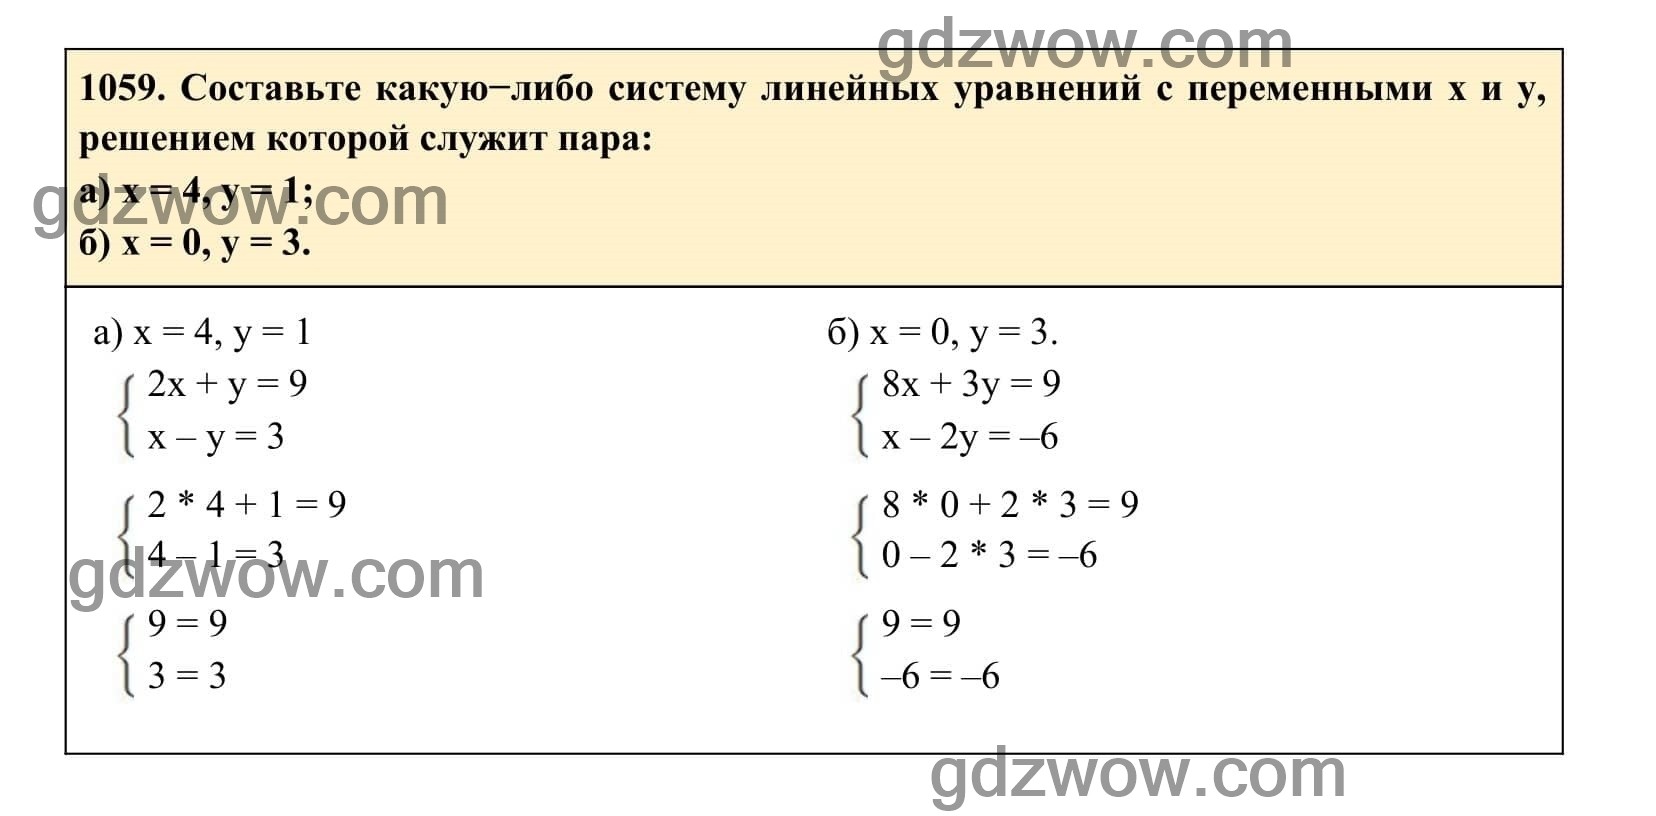 Упражнение 1059 - ГДЗ по Алгебре 7 класс Учебник Макарычев (решебник) - GDZwow